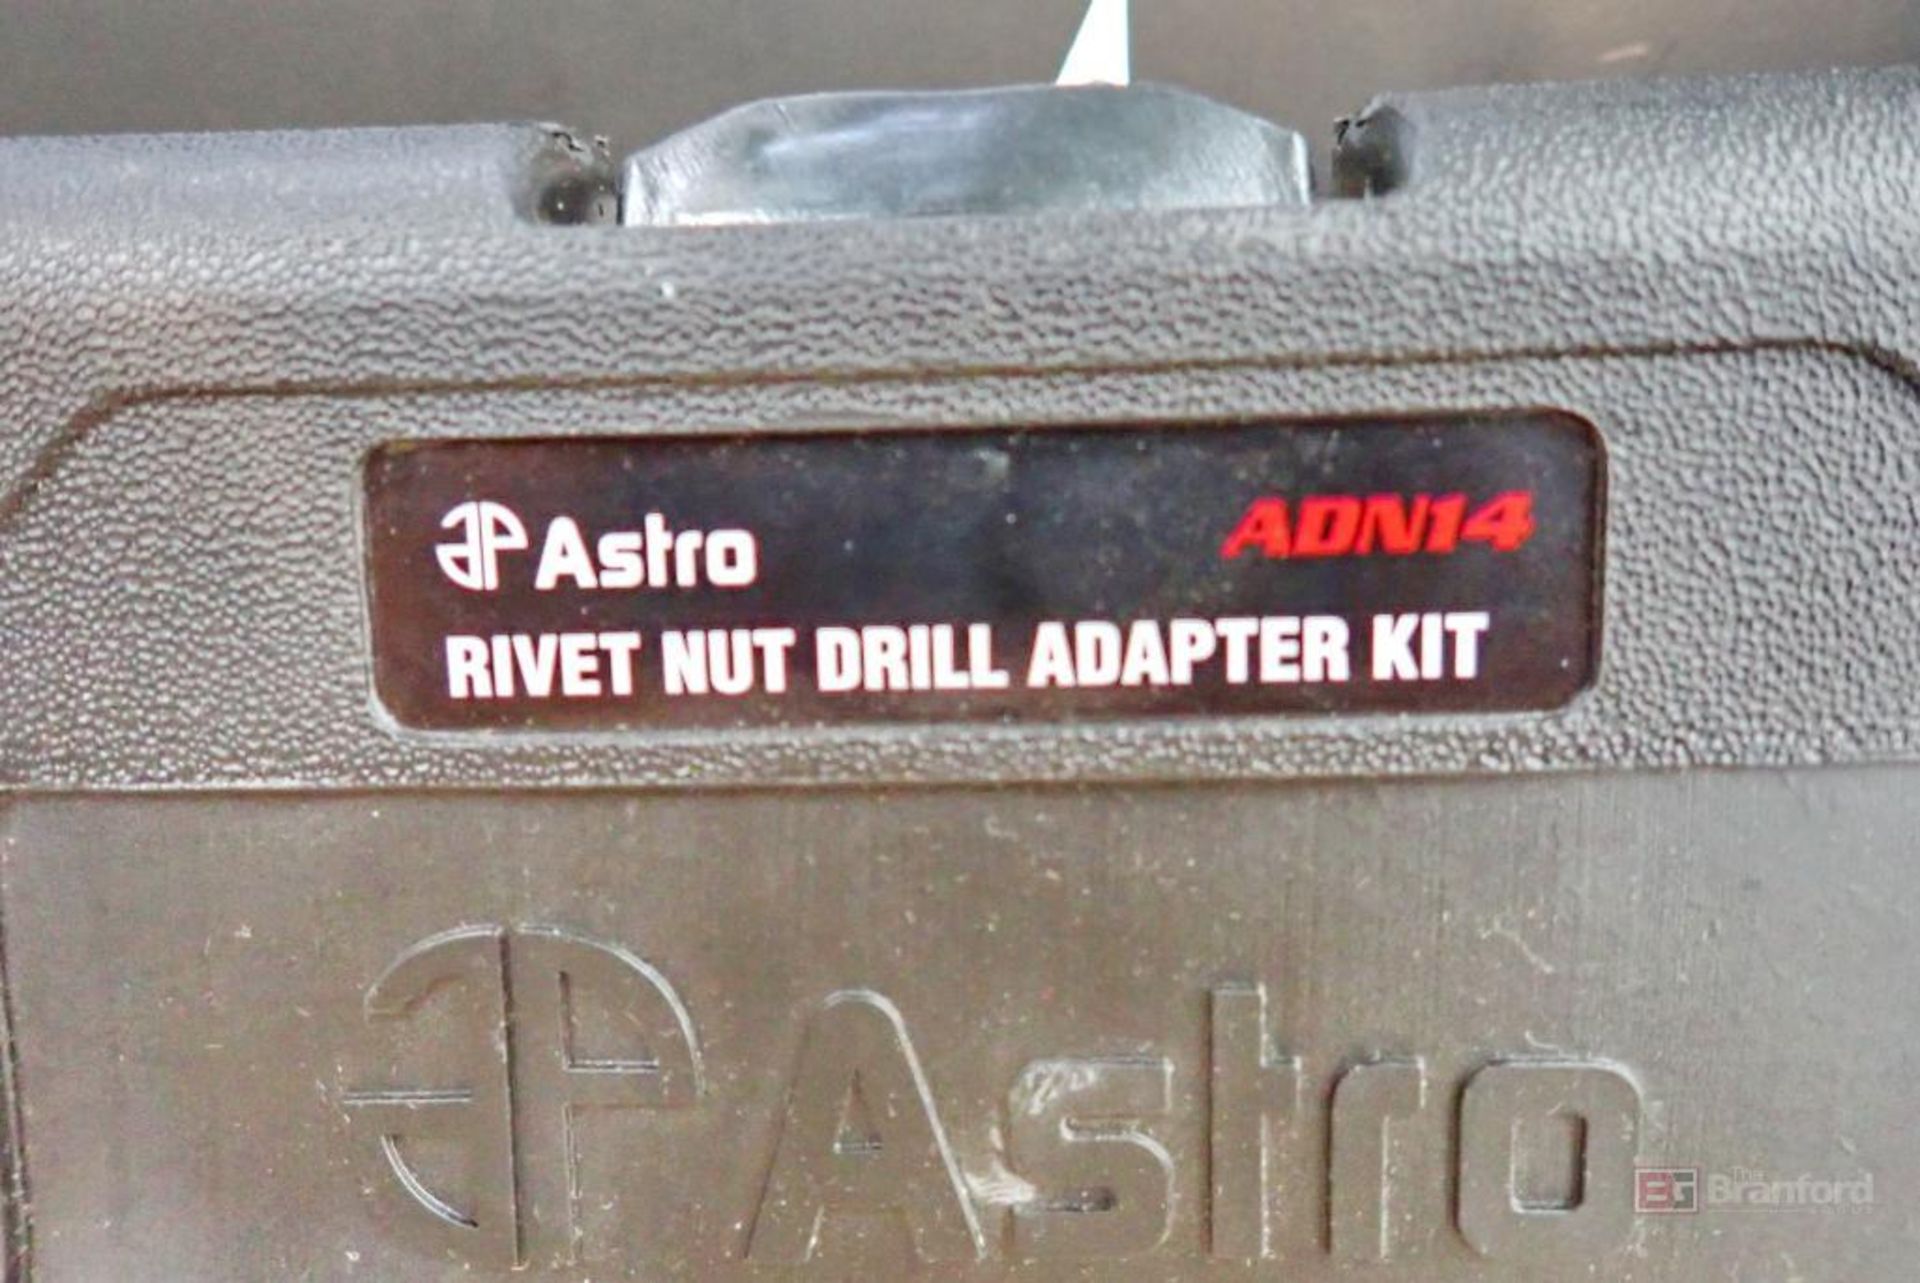 (2) Astro ADN14 Rivet Nut Drill Adapter Kits - Image 4 of 4